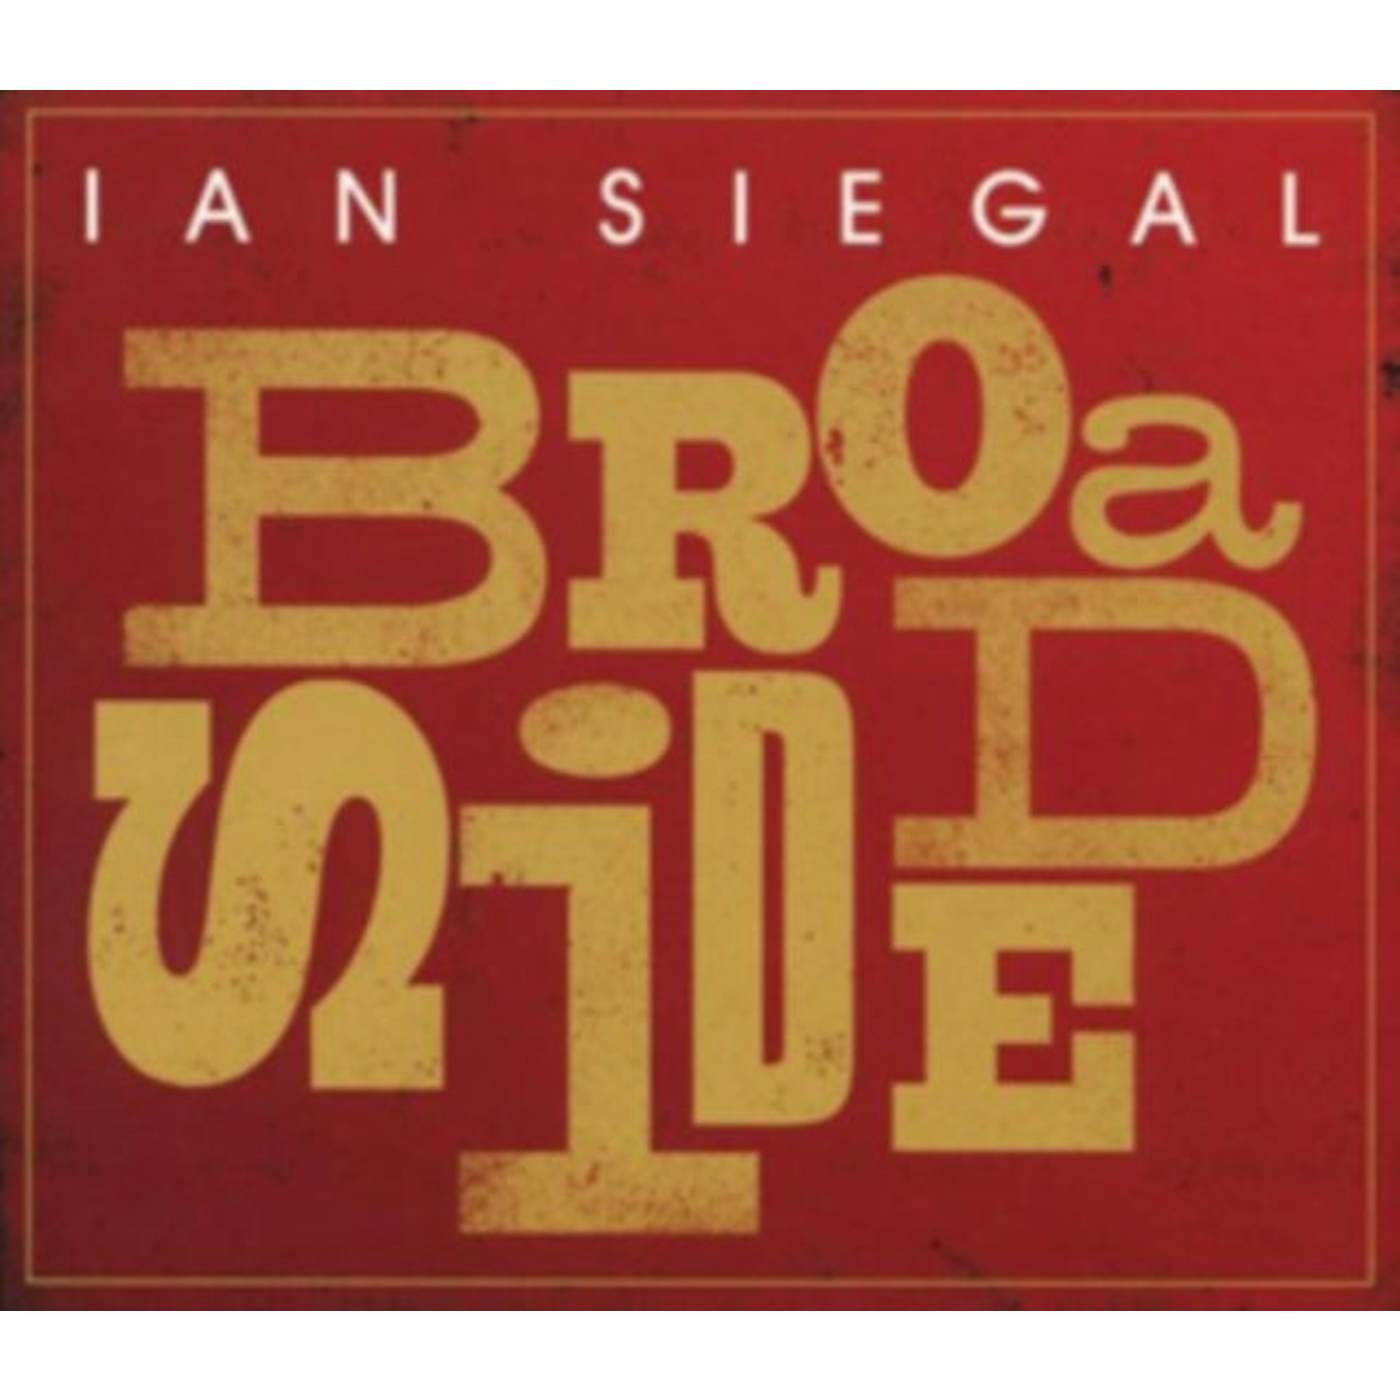 Ian Siegal CD - Broadside